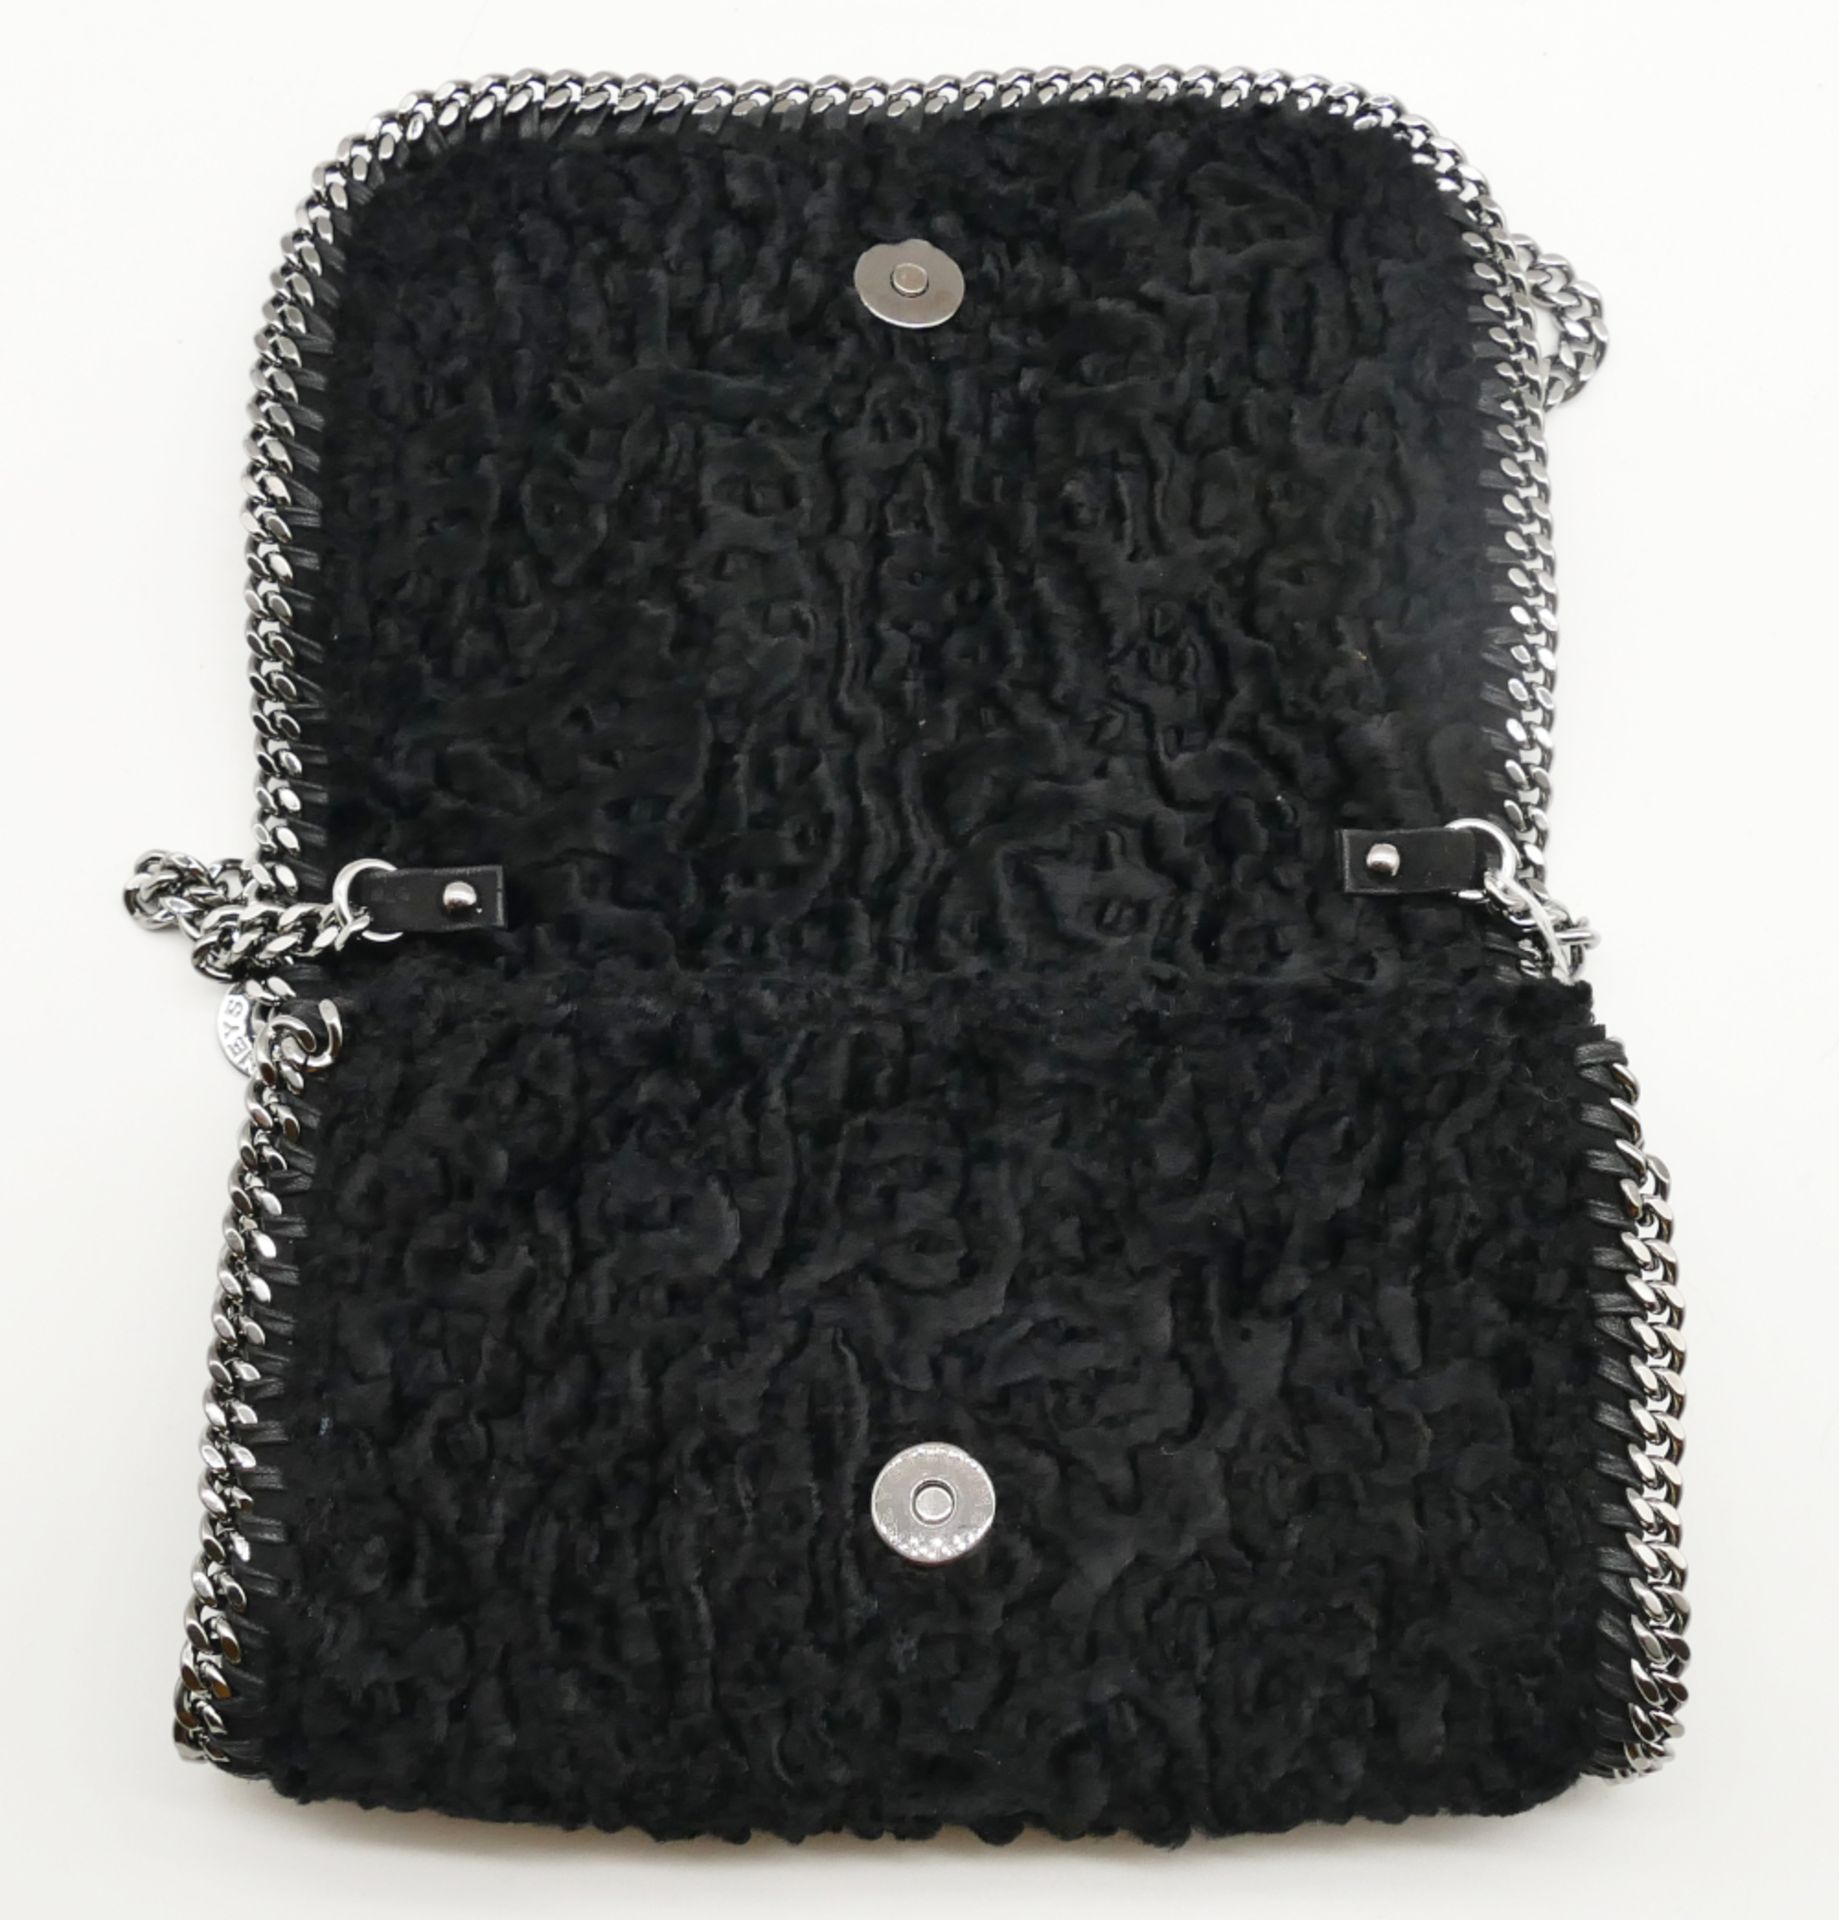 1 Damenhandtasche STELLA MCCARTNEY mit langem Schulterriemen, z.B. für Crossbody, schwarzes Fellimit - Bild 2 aus 2